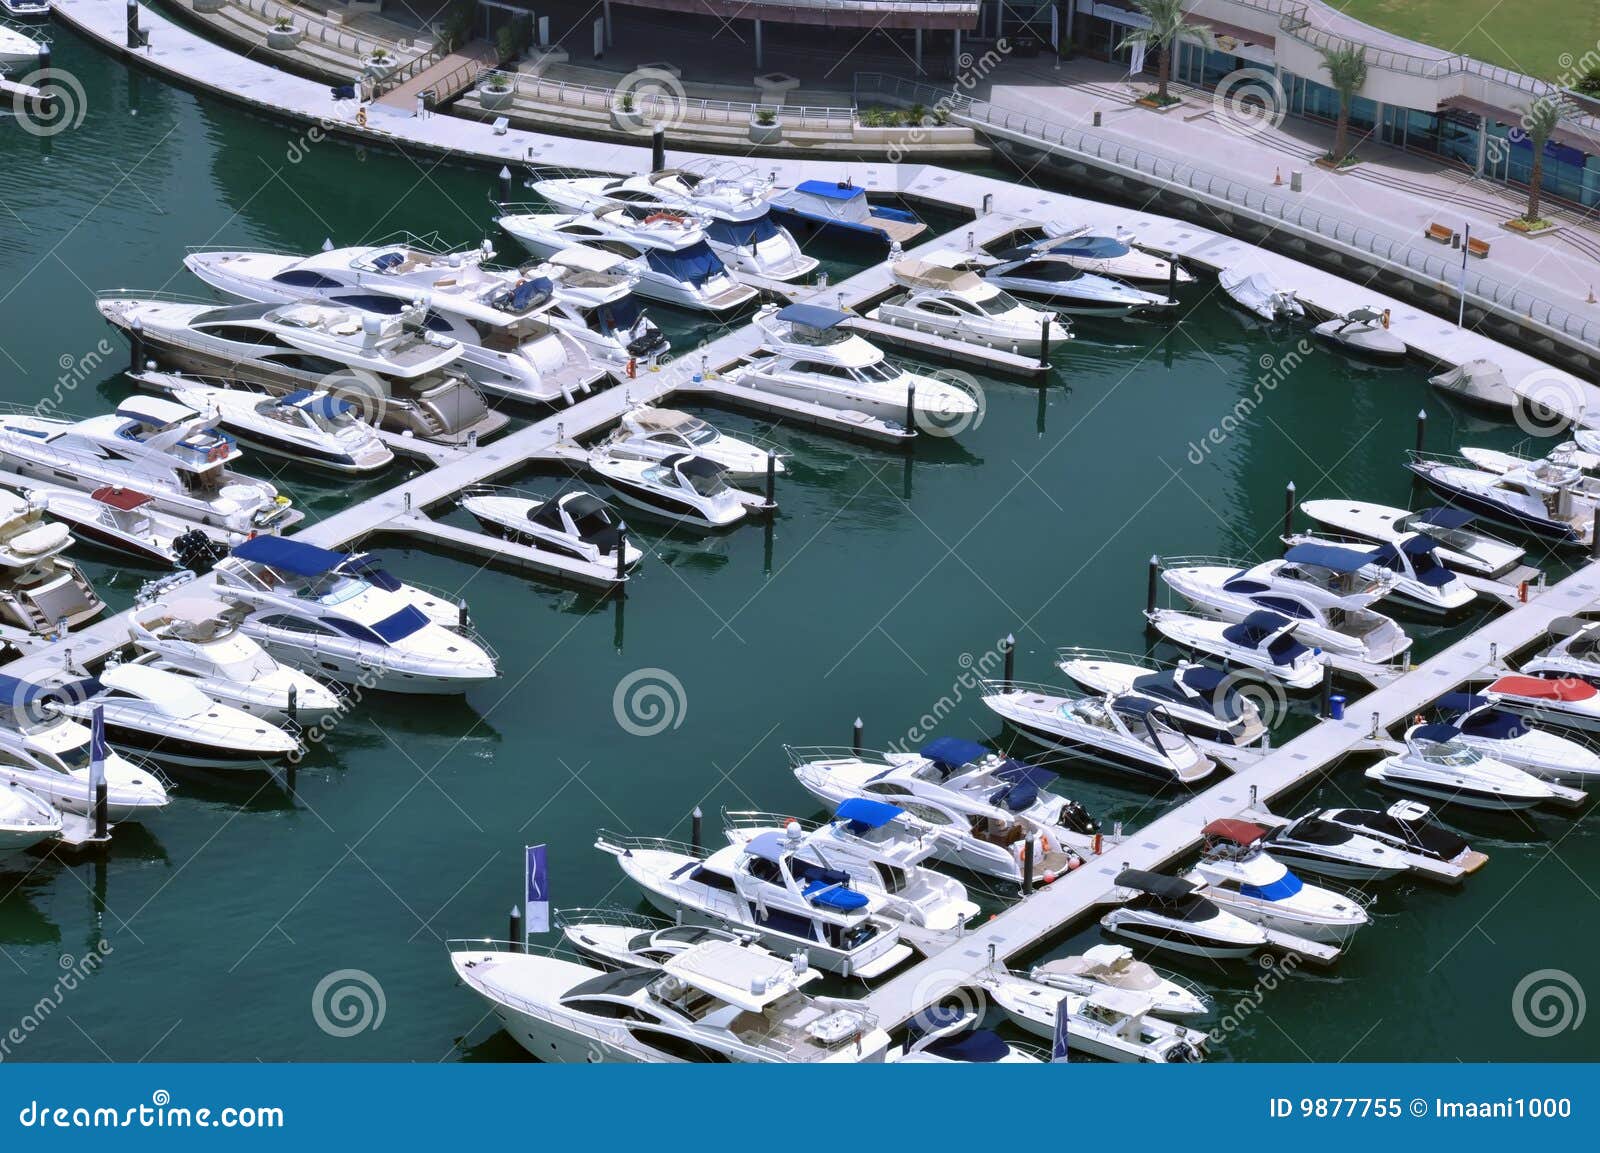 marina boats 3